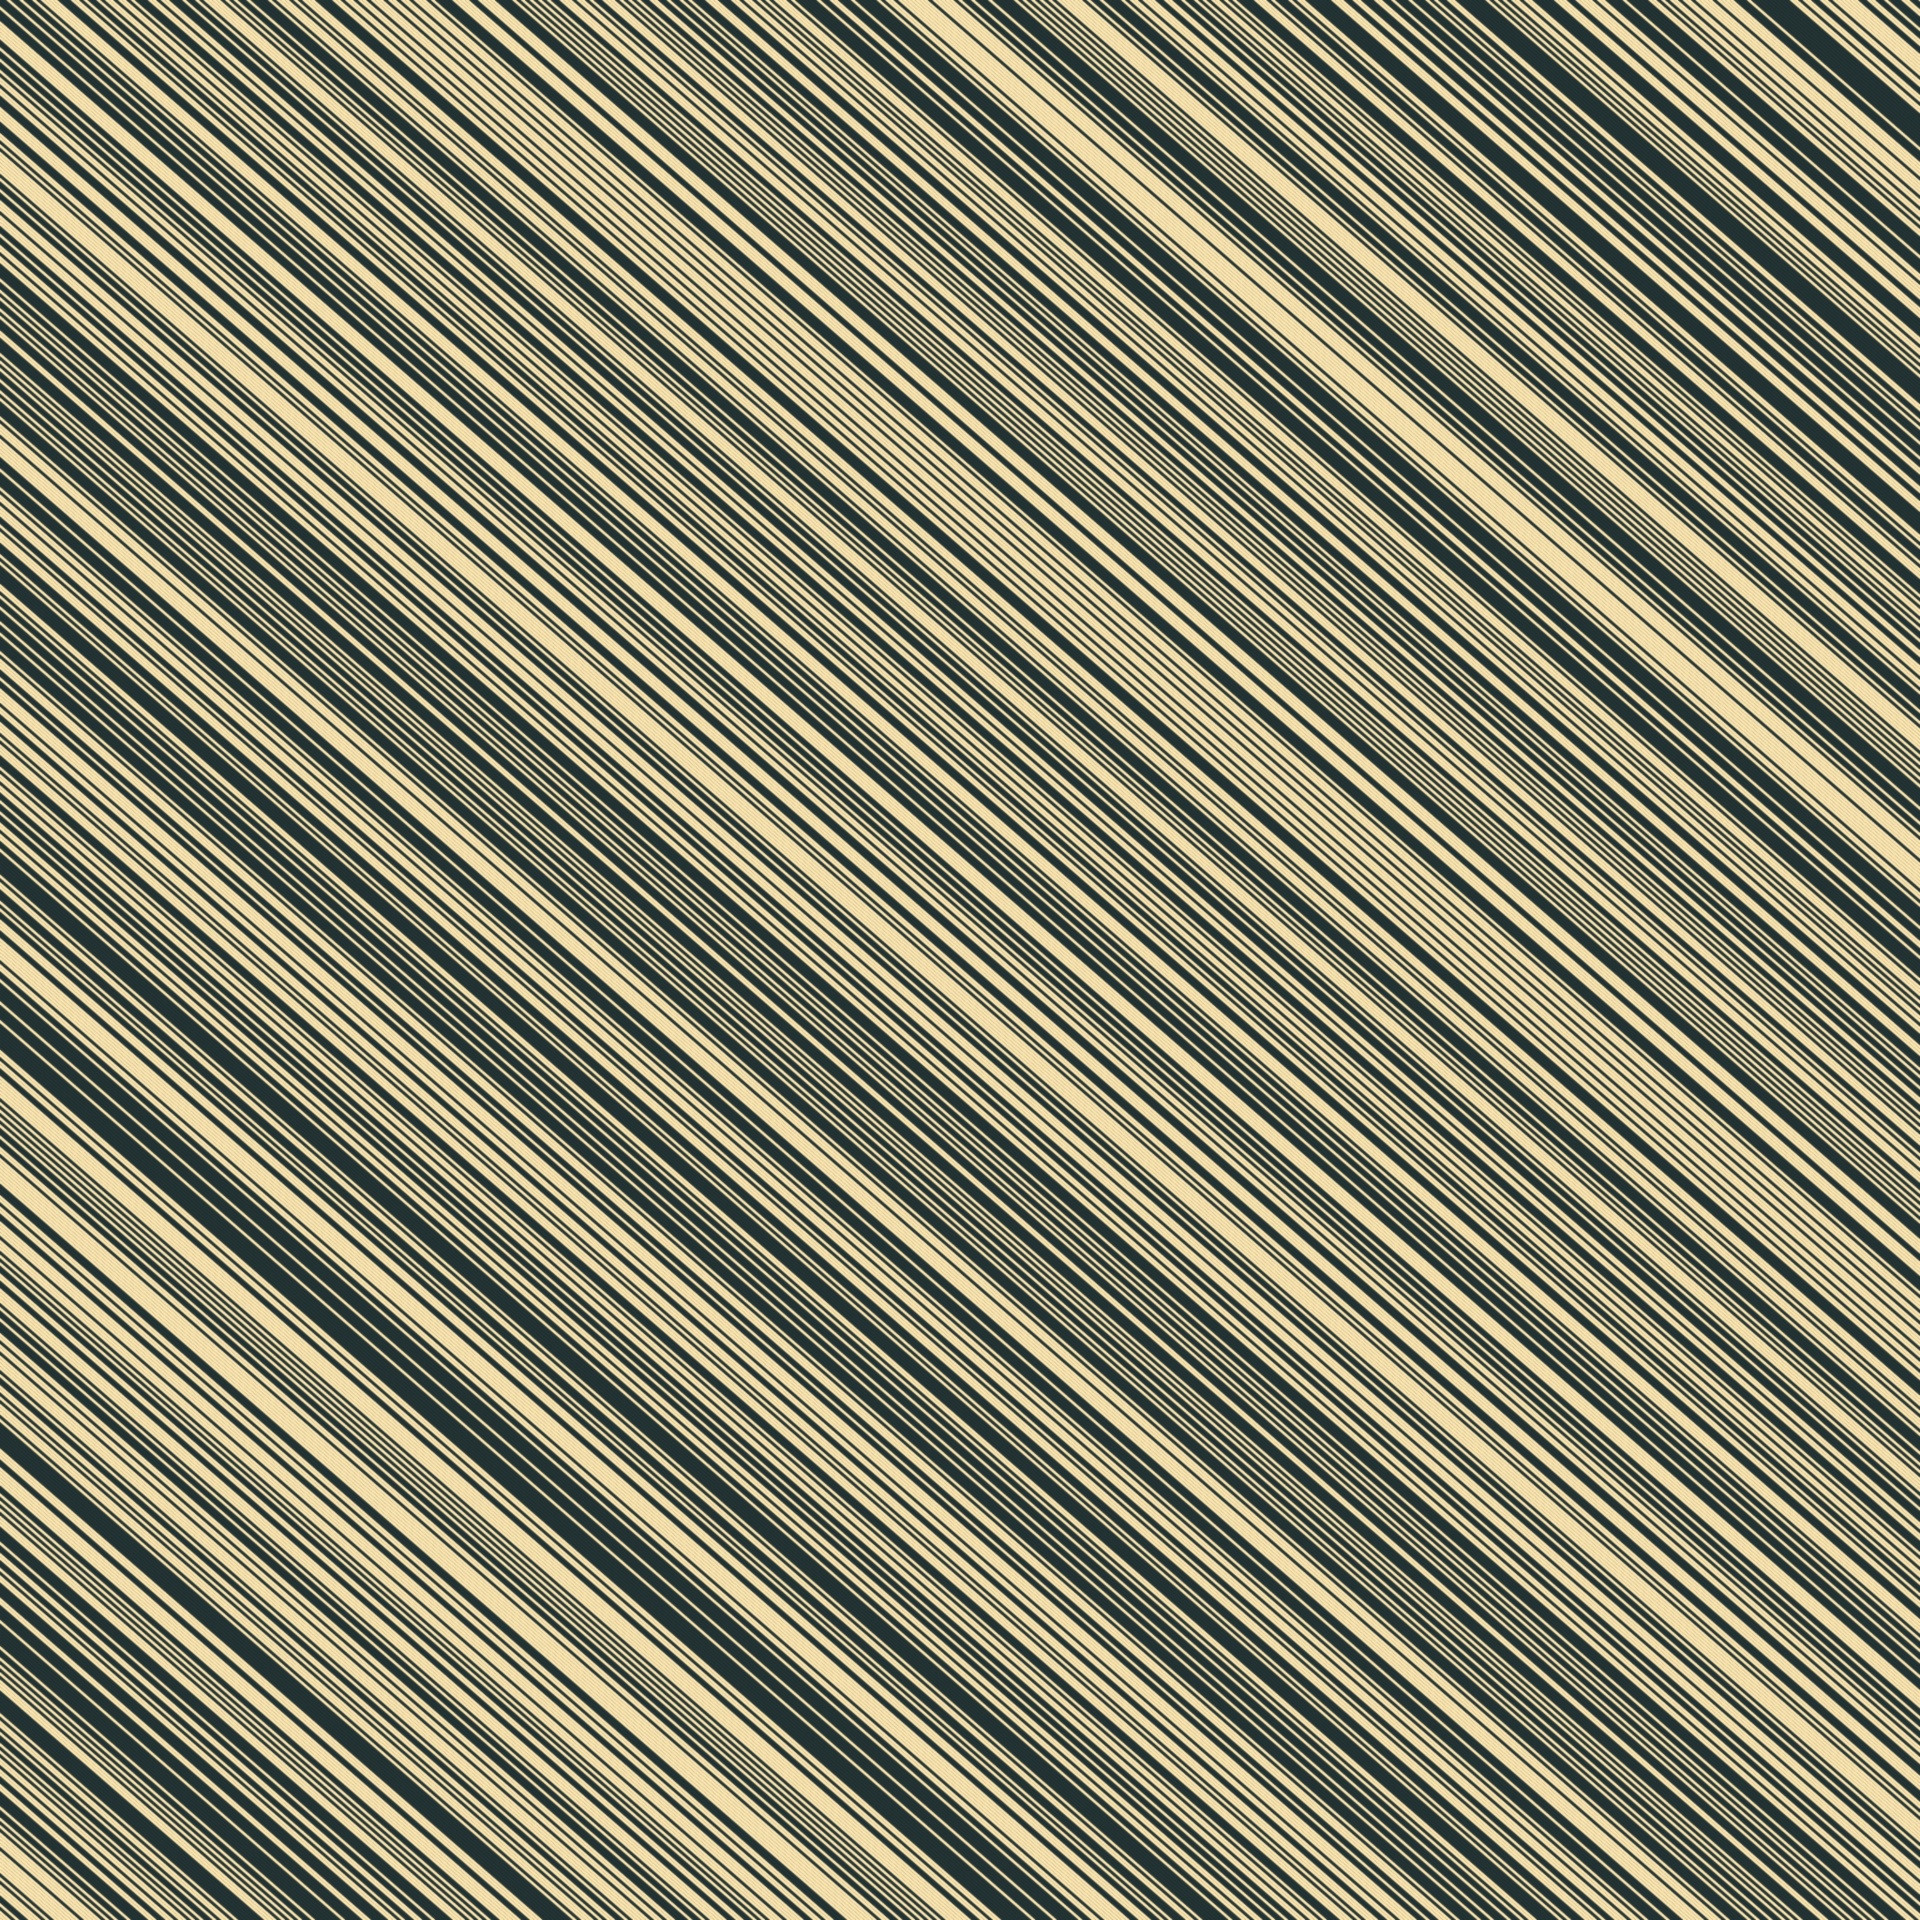 wallpaper stripes diagonal free photo